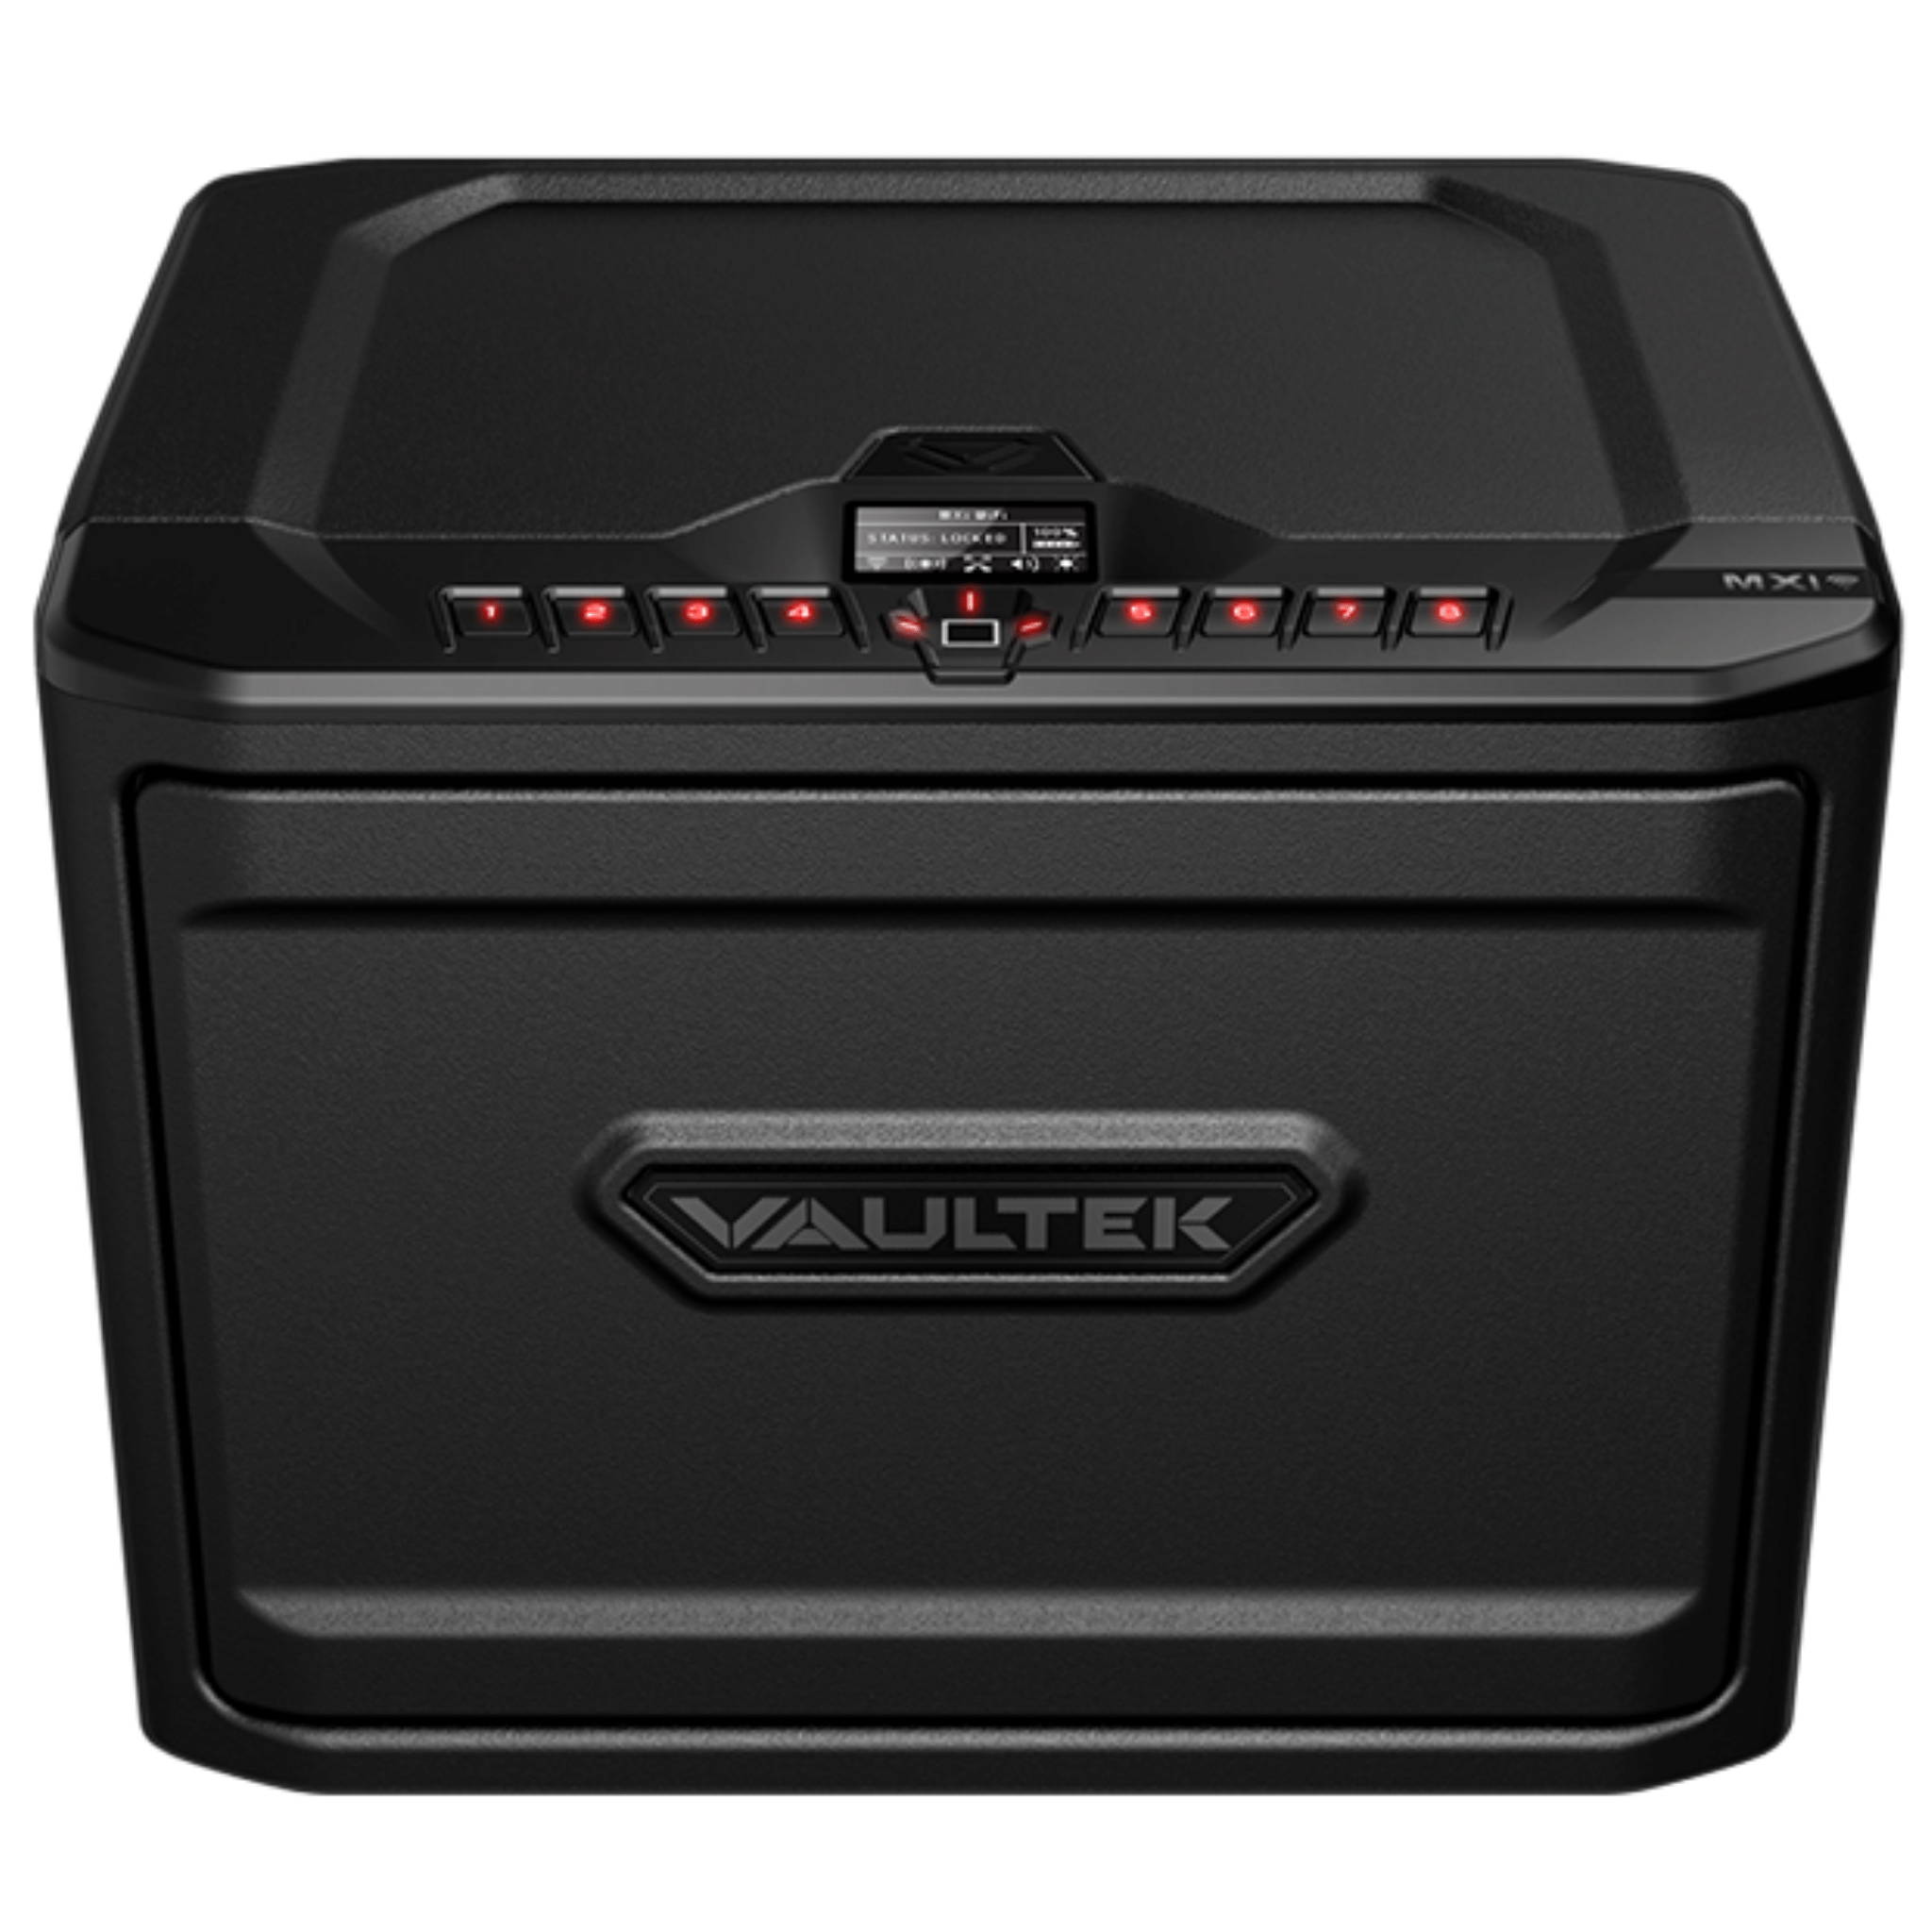 Vaultek NMXi - WiFi - Biometric